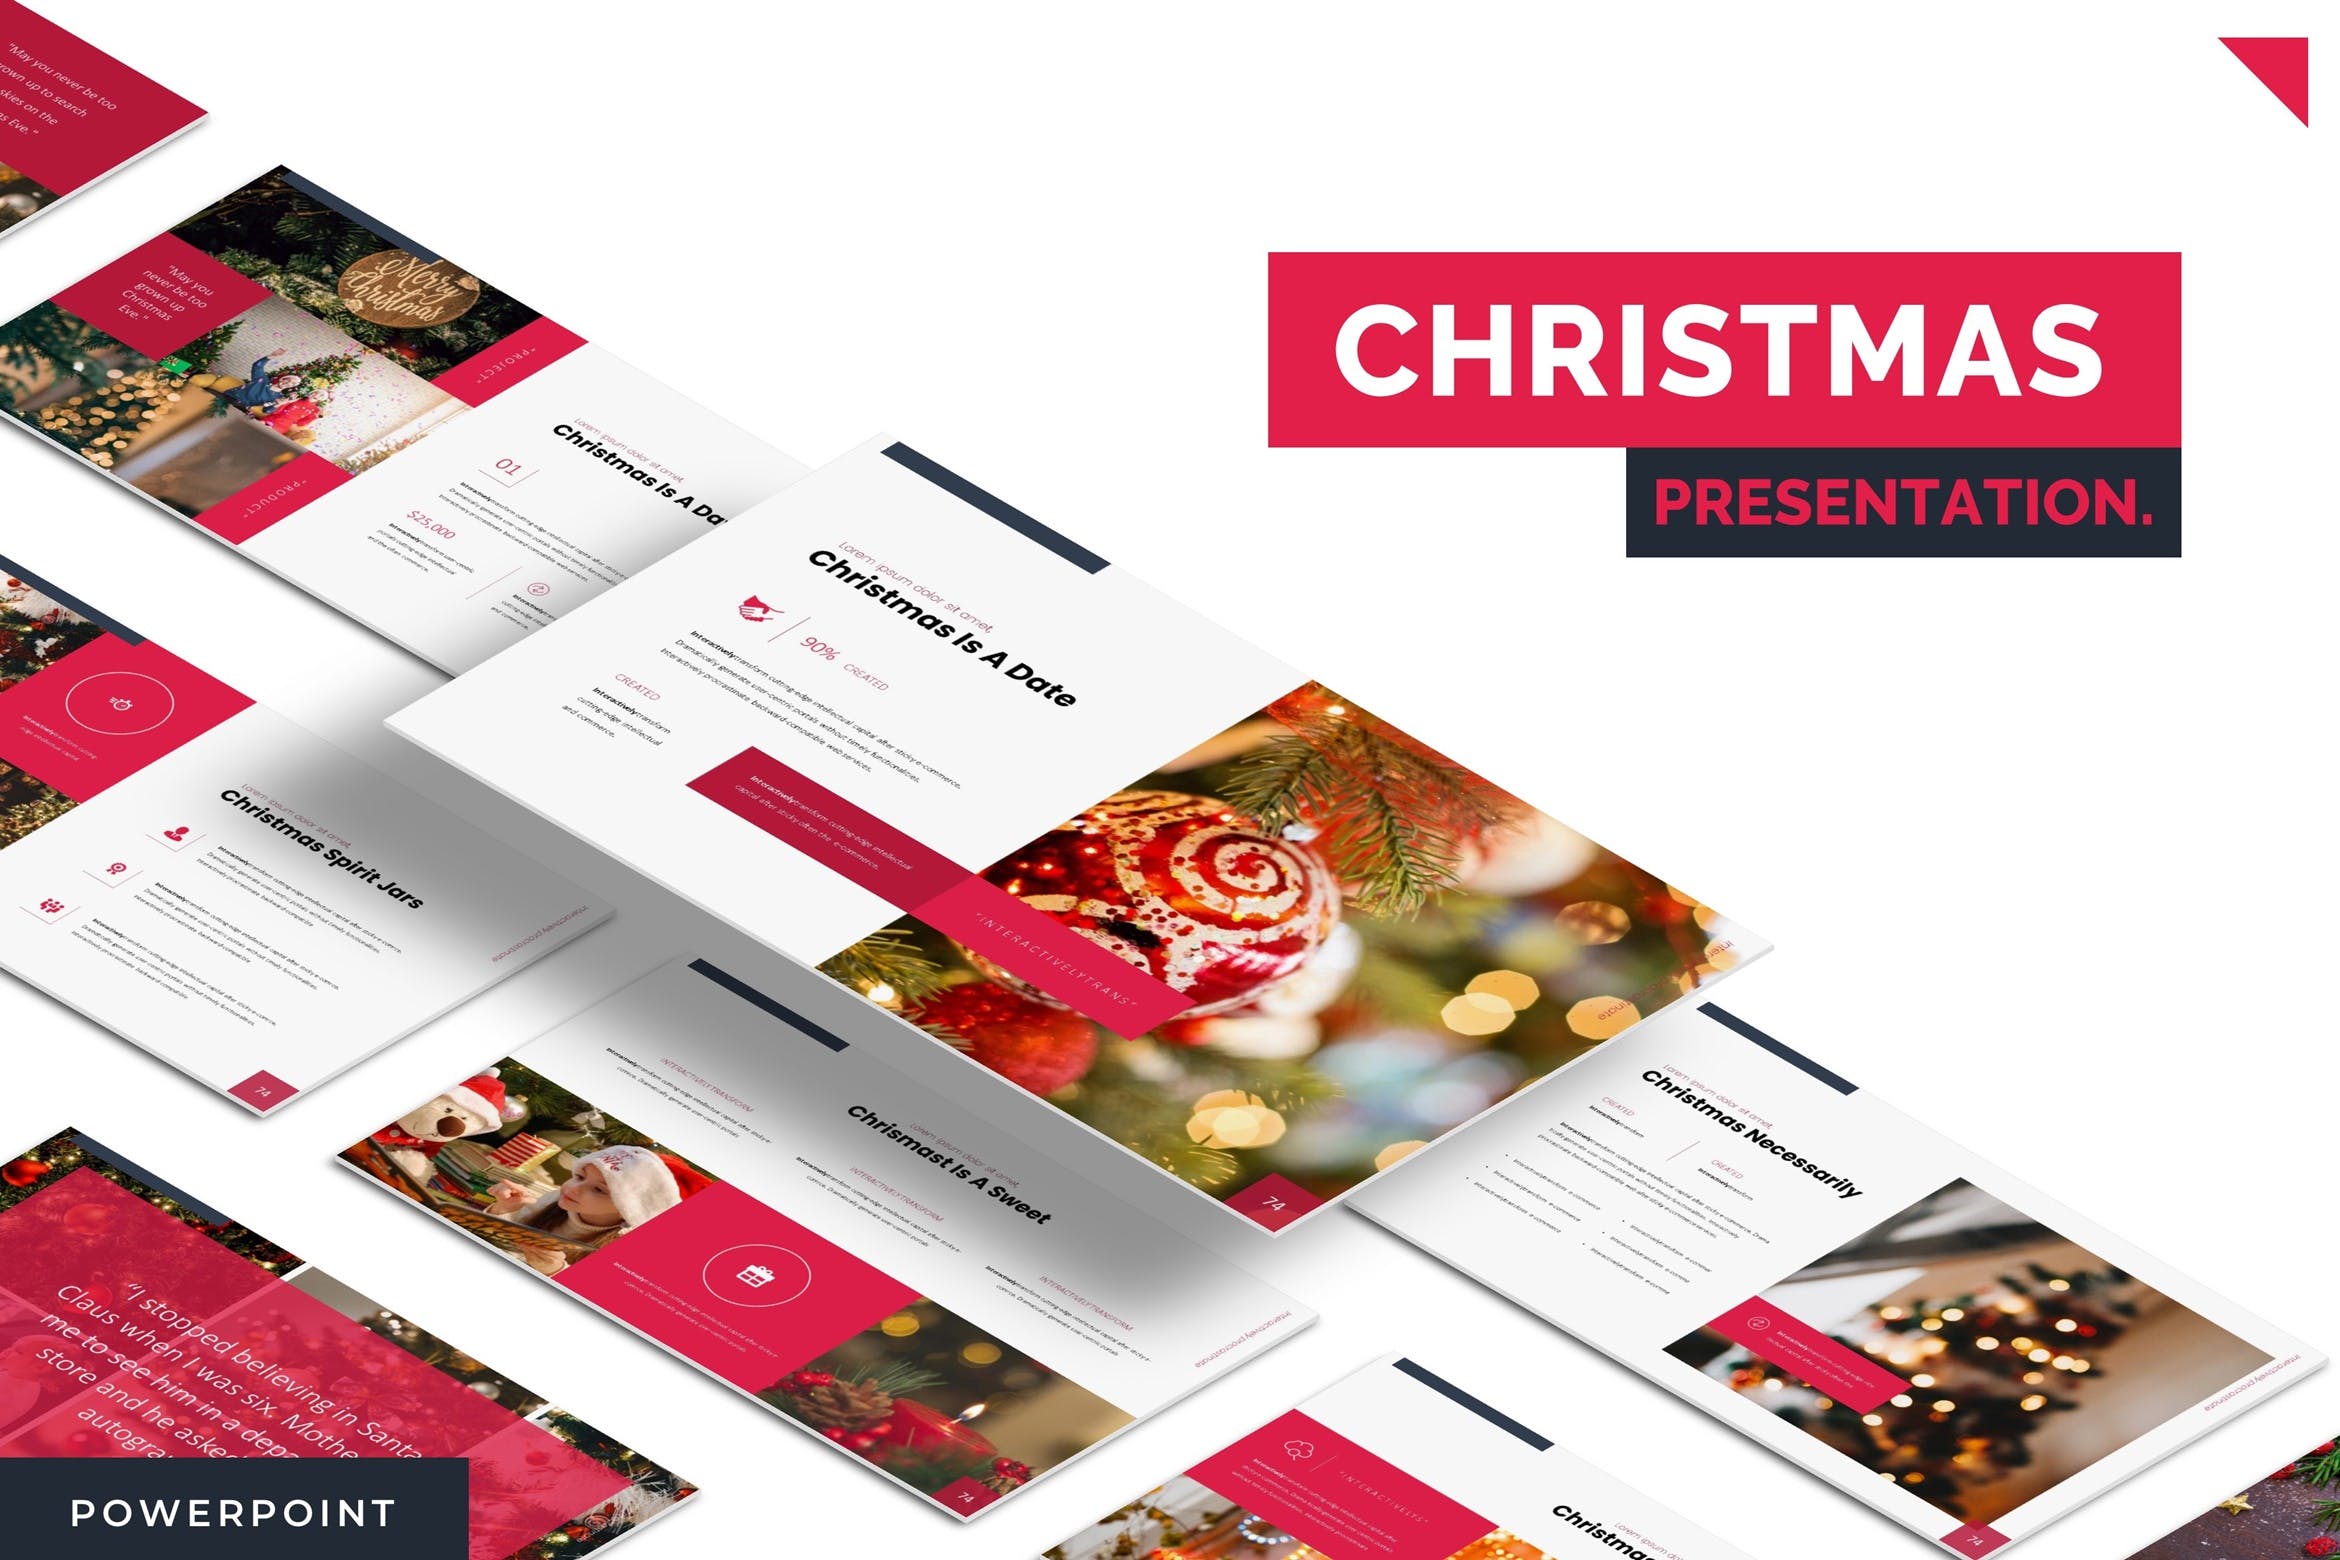 圣诞节节日主题PPT幻灯片模板下载 Christmas – Powerpoint Template插图